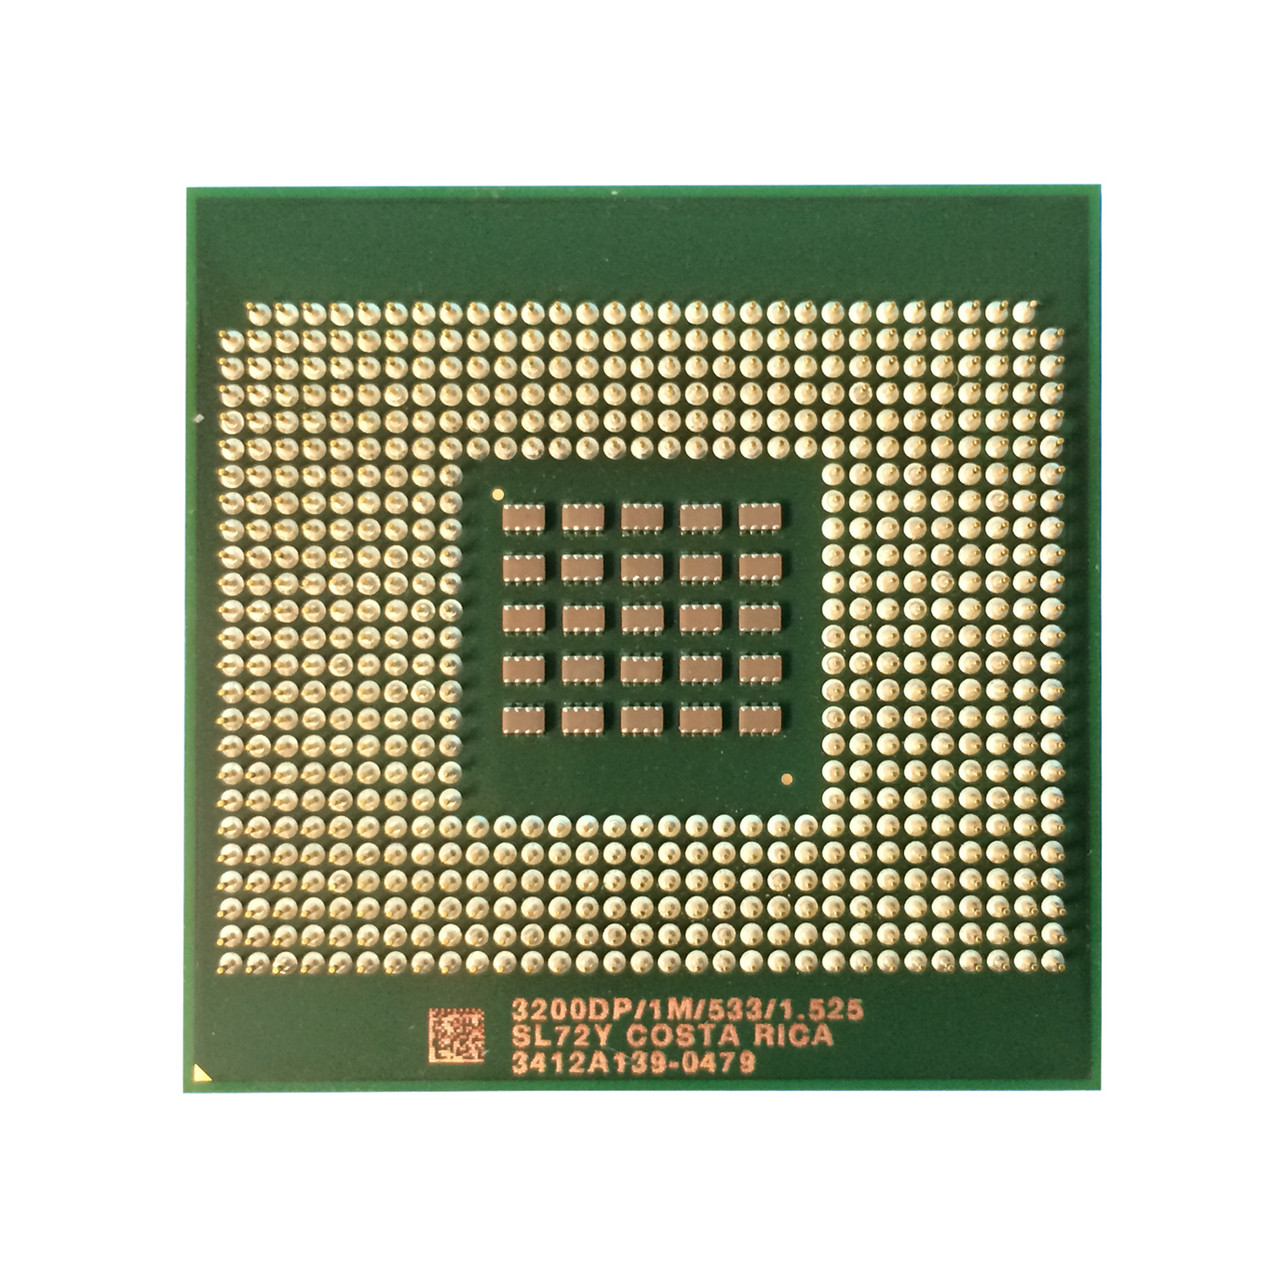 Dell C3040 Xeon 3.2Ghz 1MB 533FSB Processor